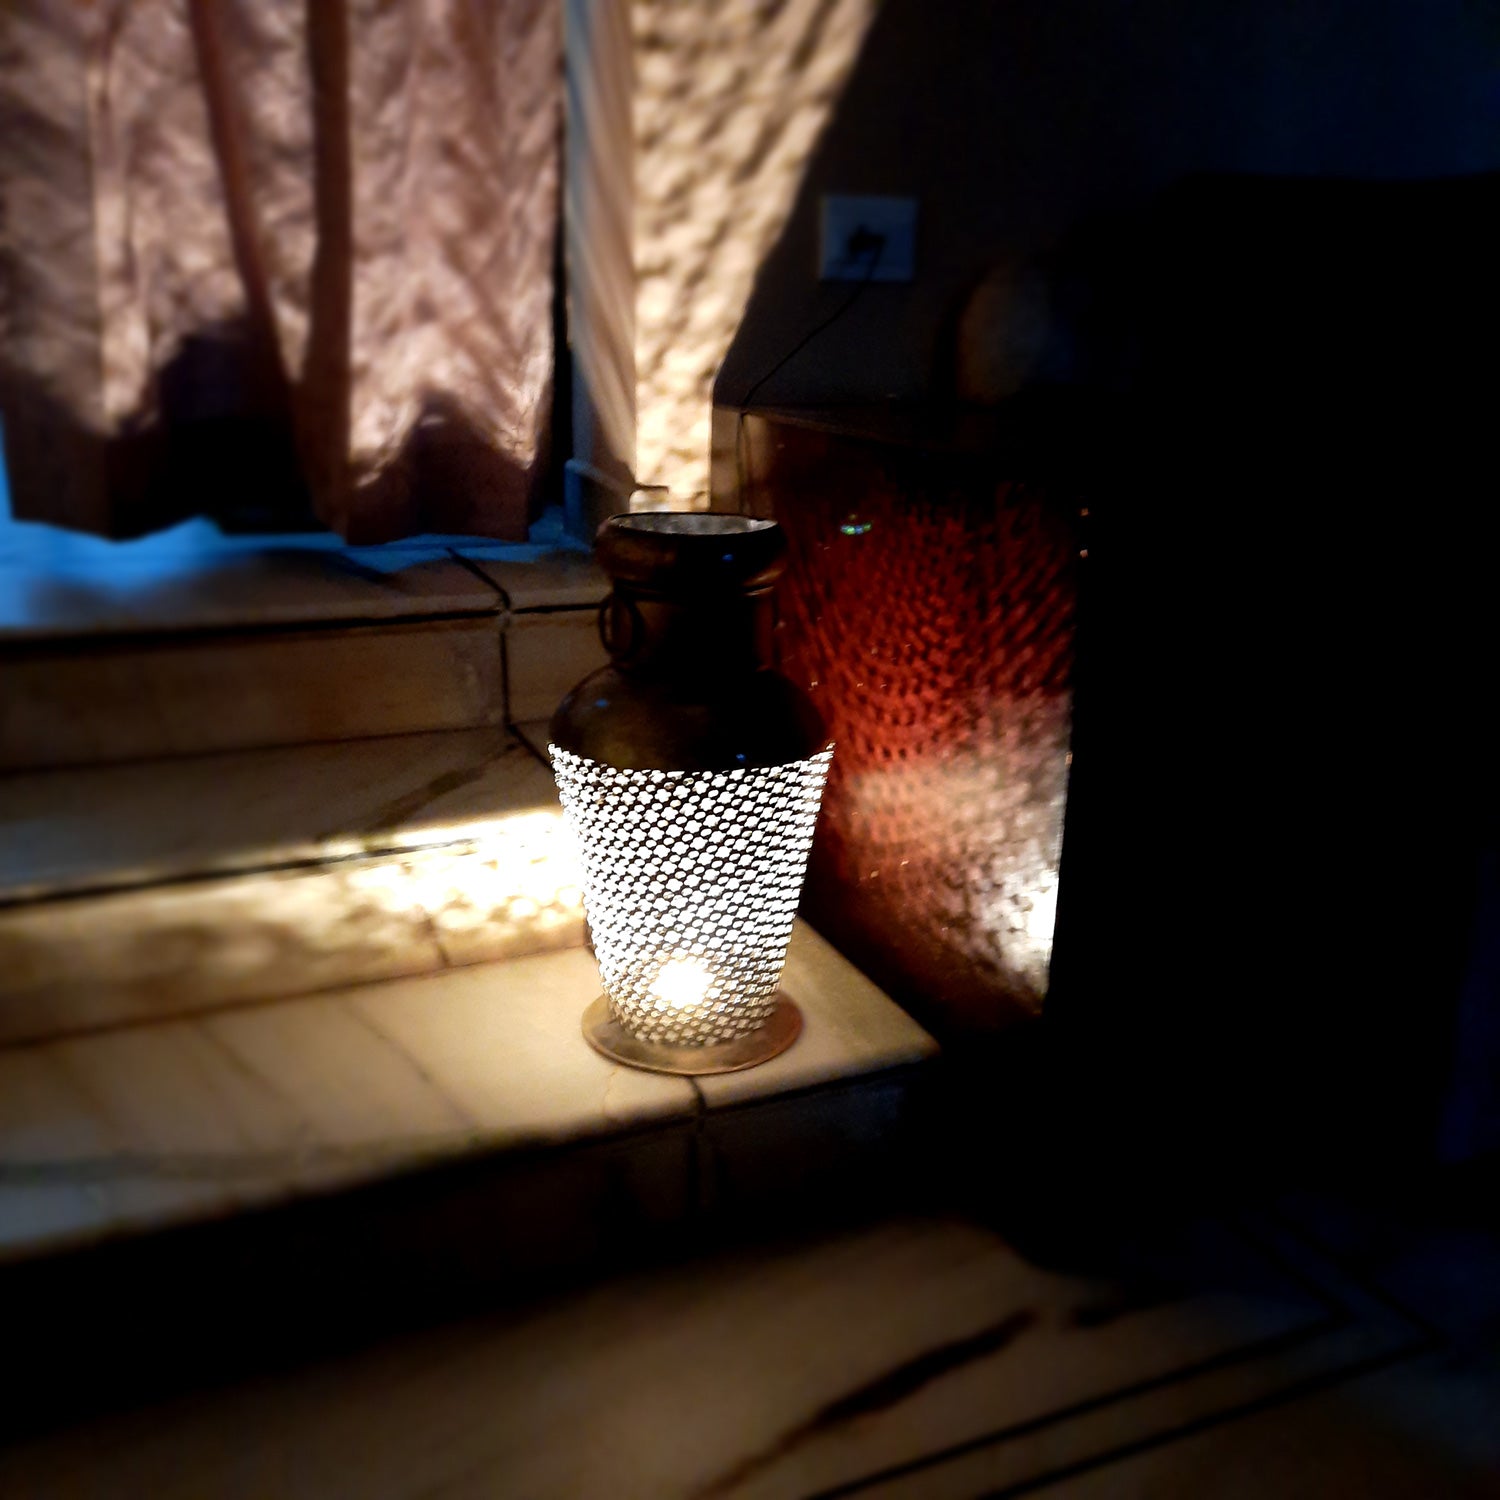 Corner Vase With Led Light | LED Lamp | Showpiece - for Home, Living Room, Bedroom & Gifts - 17 Inch - Apkamart